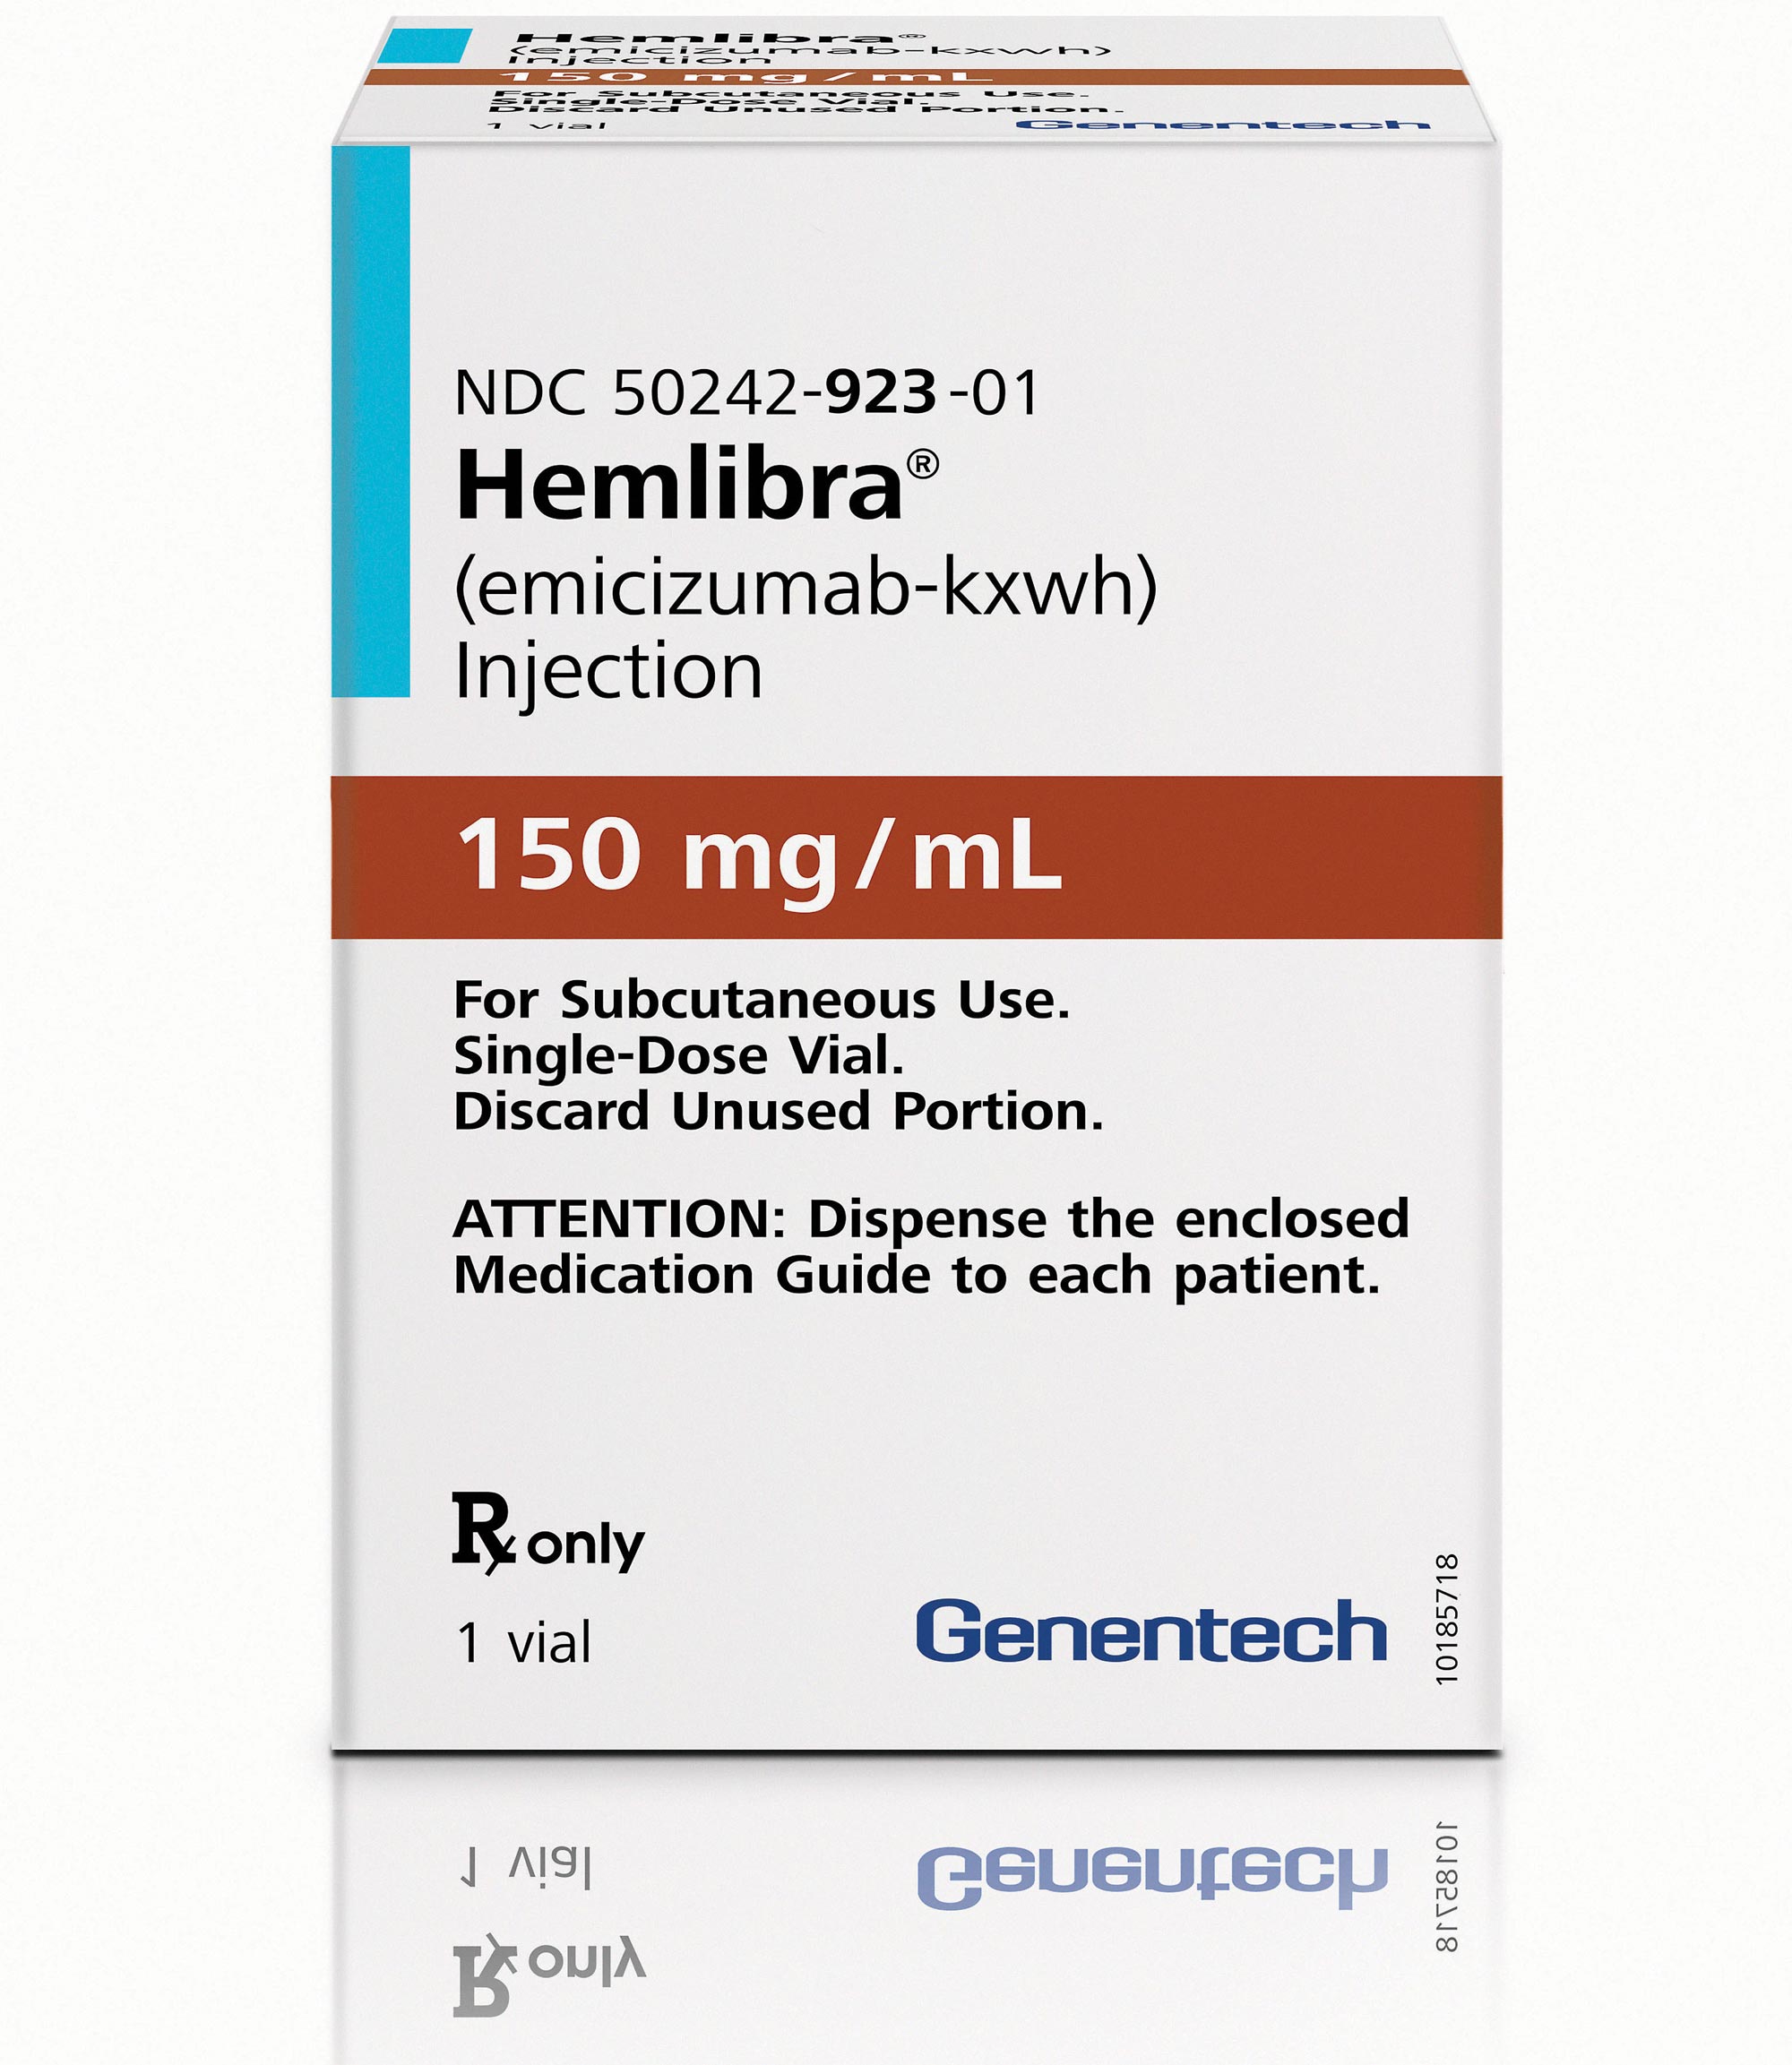 罗氏A型血友病新药Hemlibra 3期临床结果积极